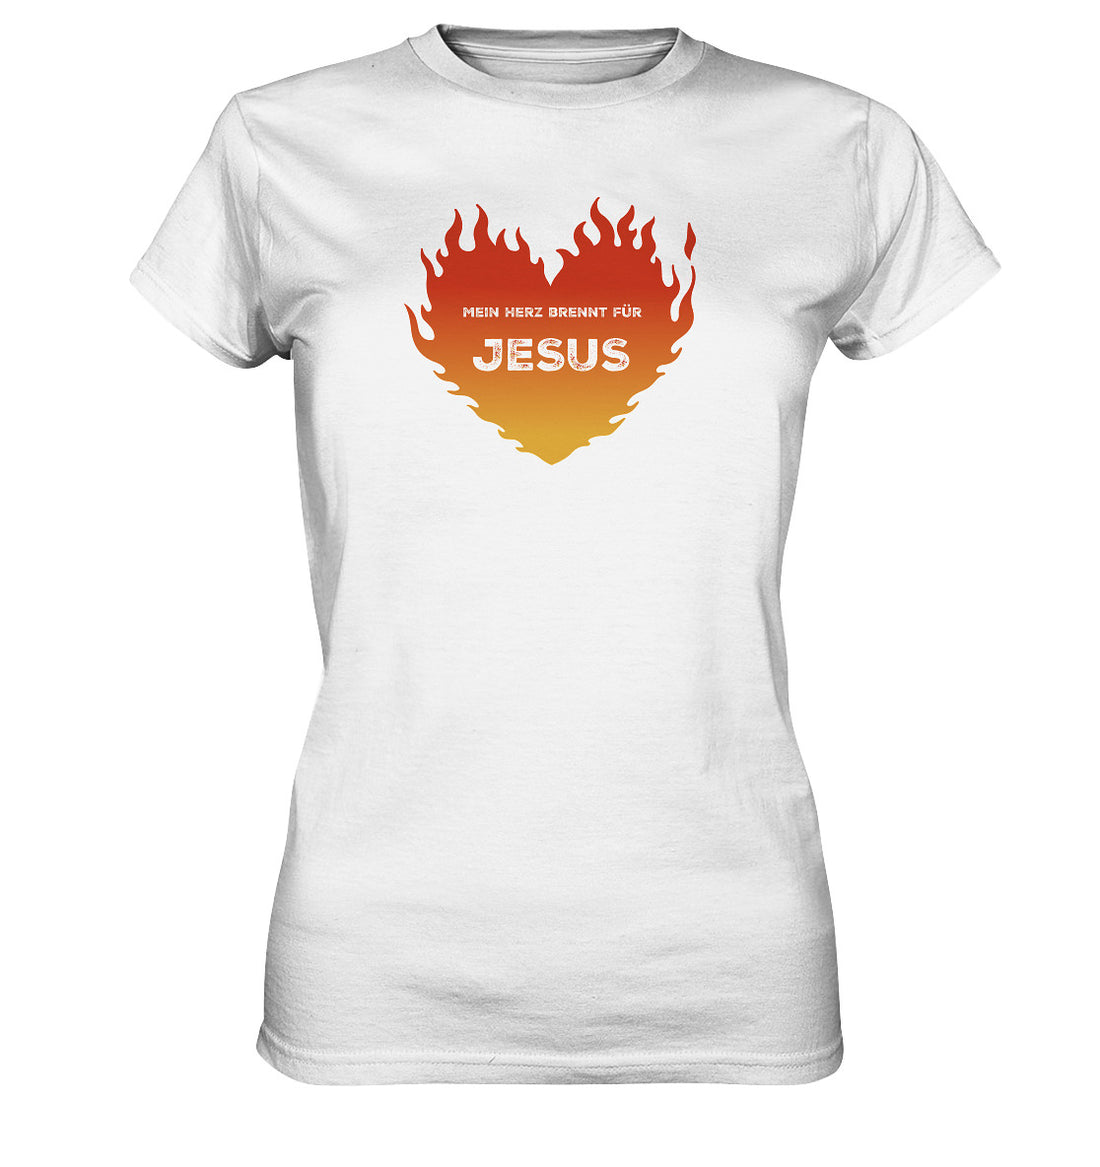 Lk 24,32 - Mein Herz brennt für JESUS - Ladies Premium Shirt